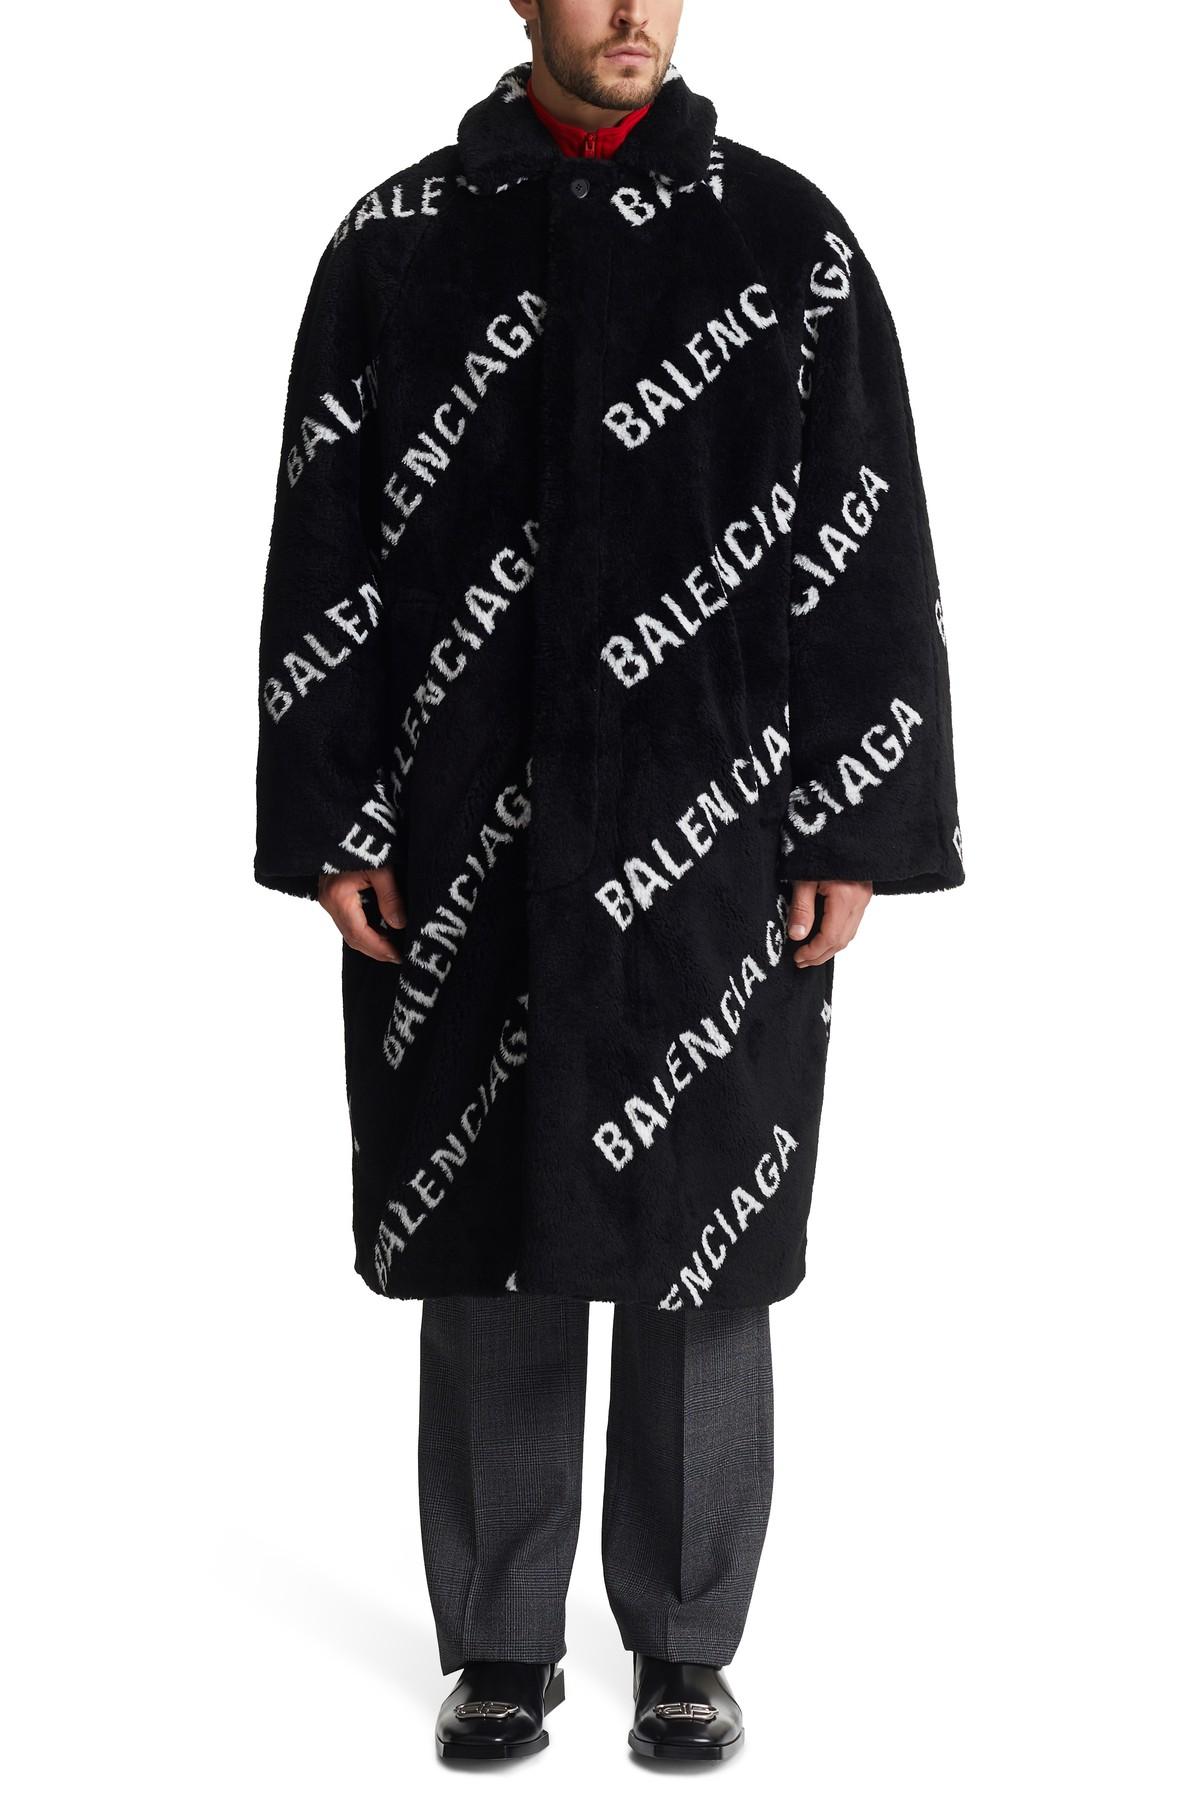 Balenciaga Ao Fur Coat in Black for Men | Lyst Australia